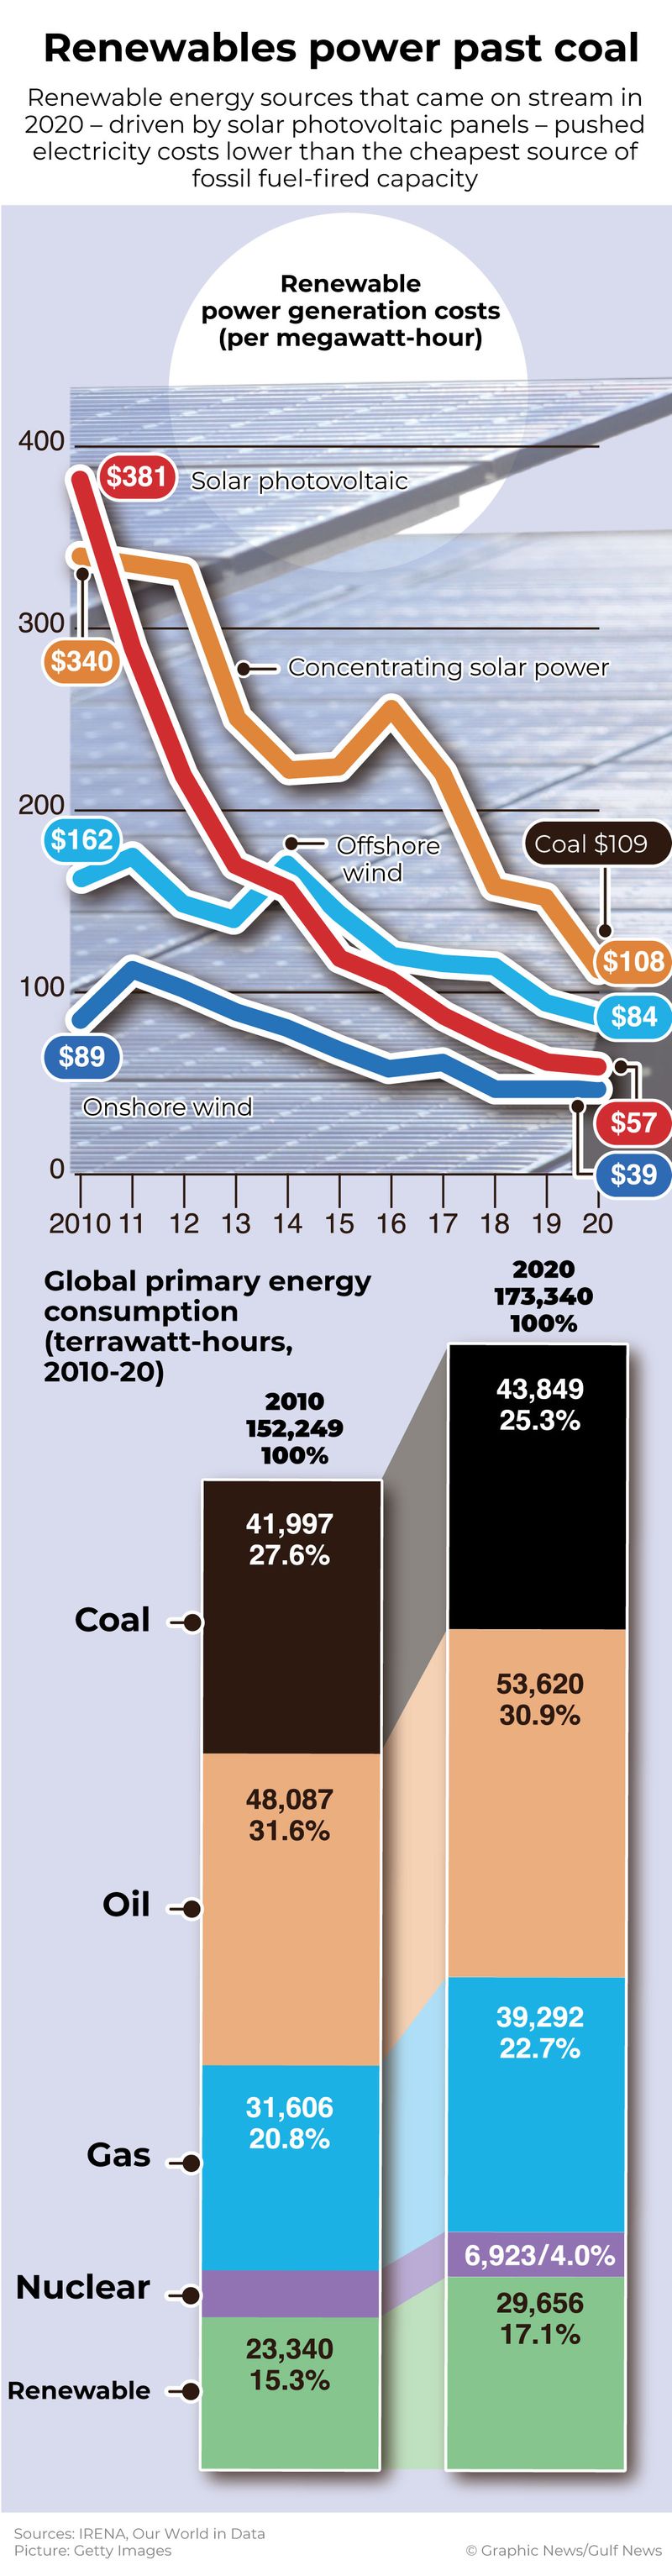 Renewables power past coal